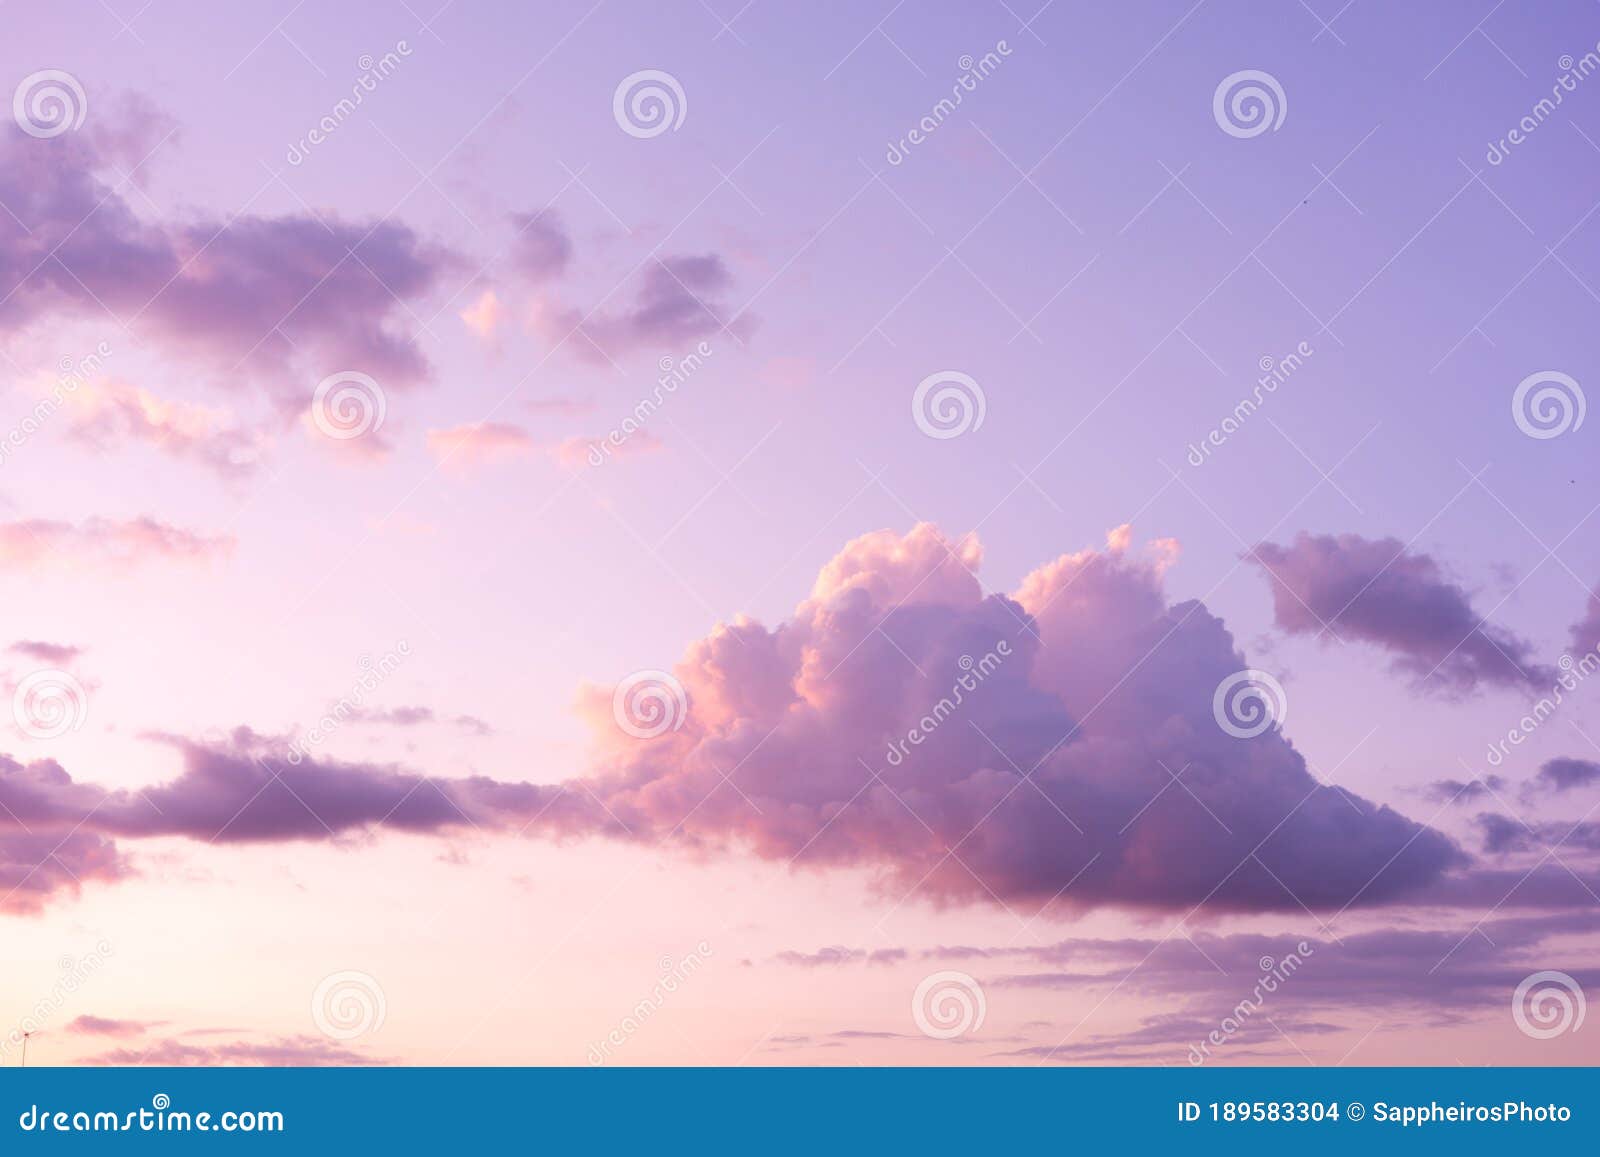 Trên bầu trời xanh lịch sử, những đám mây tím đầy hoa văn như những tác phẩm nghệ thuật. Hãy cùng ngắm nhìn chúng, với những mảng màu tím khói hương tràn đầy tự do và đầy mơ mộng.